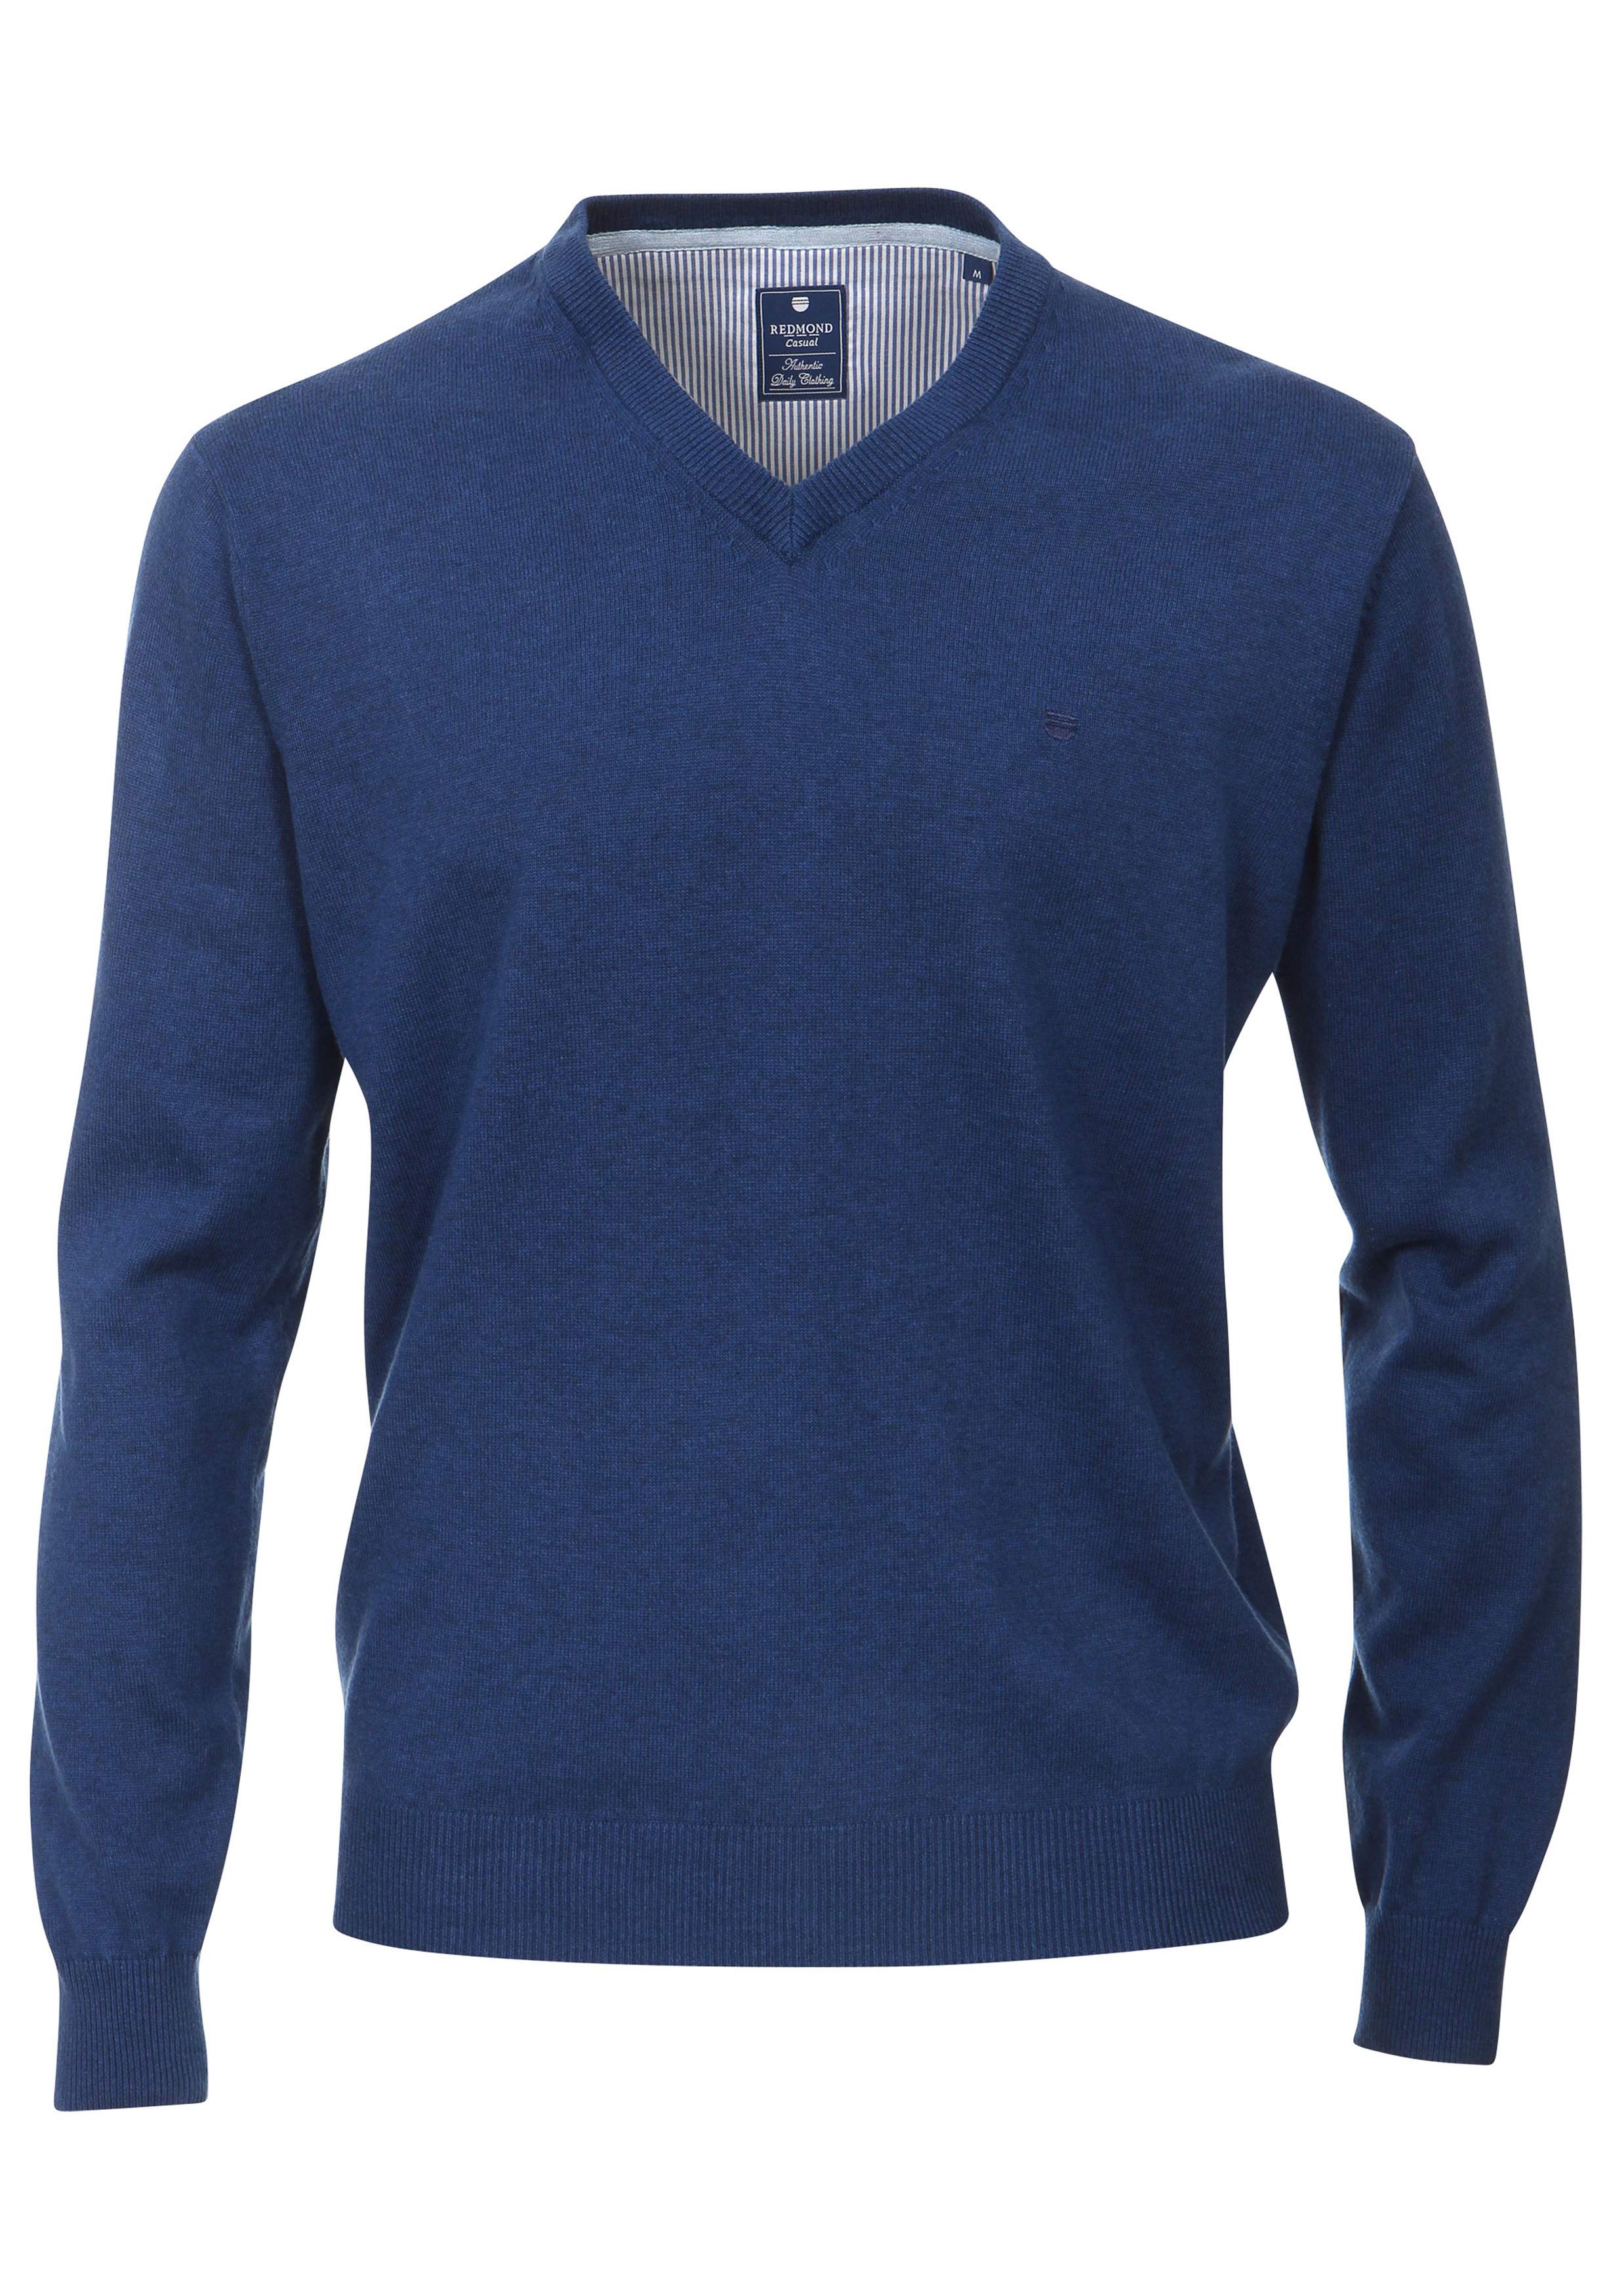 Maaltijd voorzien In dienst nemen Redmond heren trui katoen, V-hals, jeans-blauw - Shop de nieuwste  voorjaarsmode